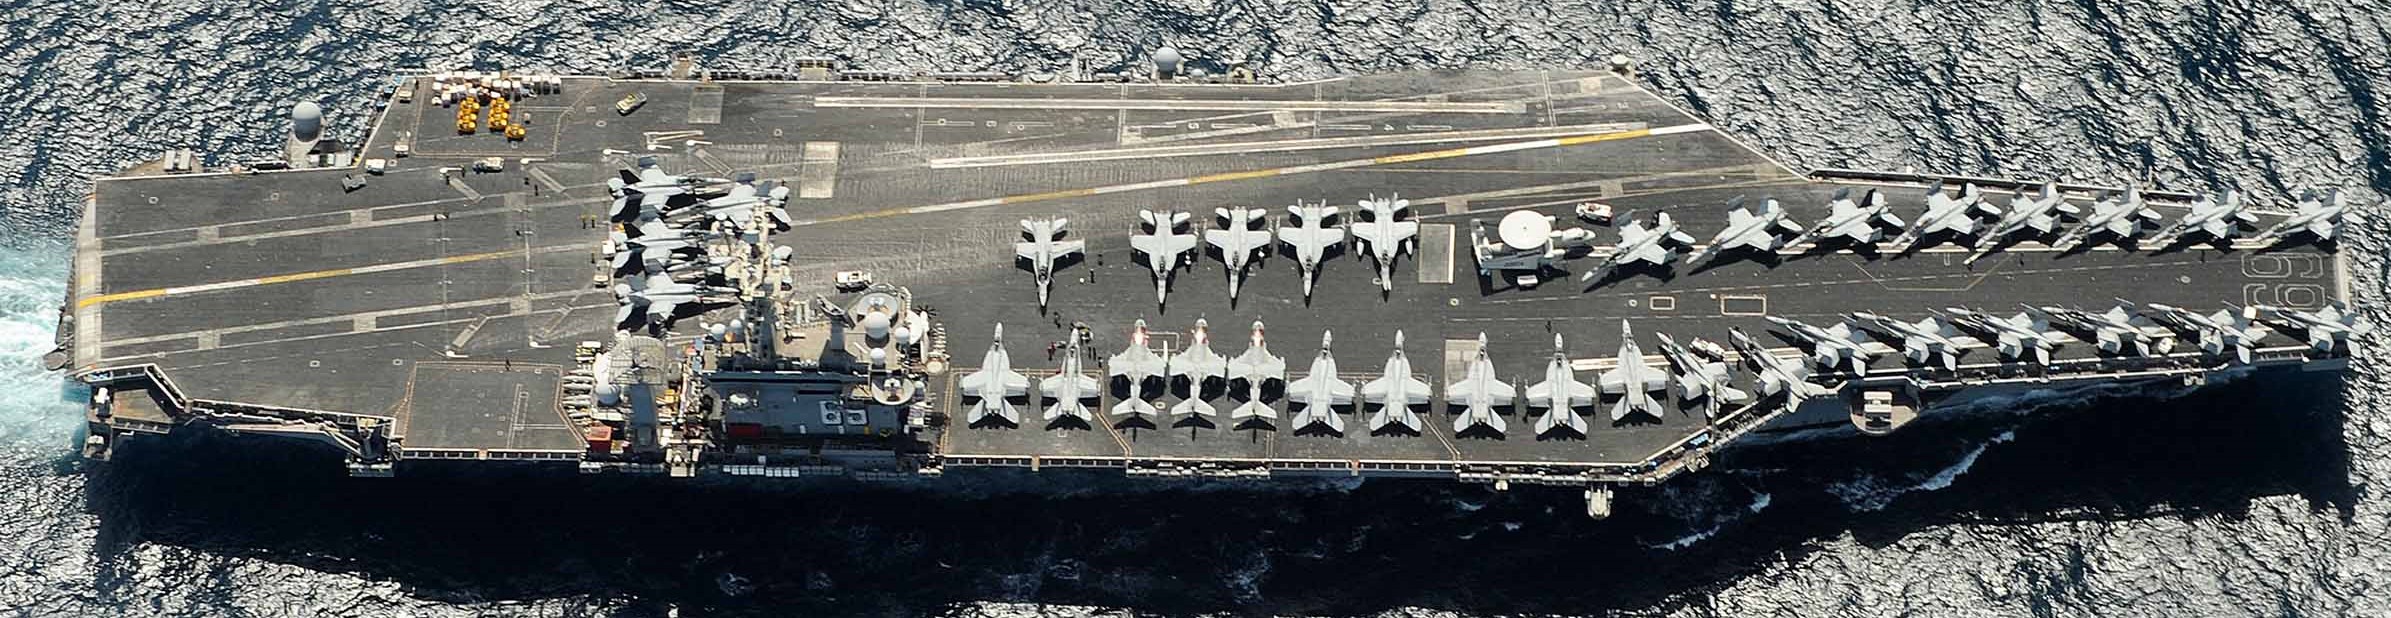 cvn-69 uss dwight d. eisenhower aircraft carrier air wing cvw-7 us navy 90